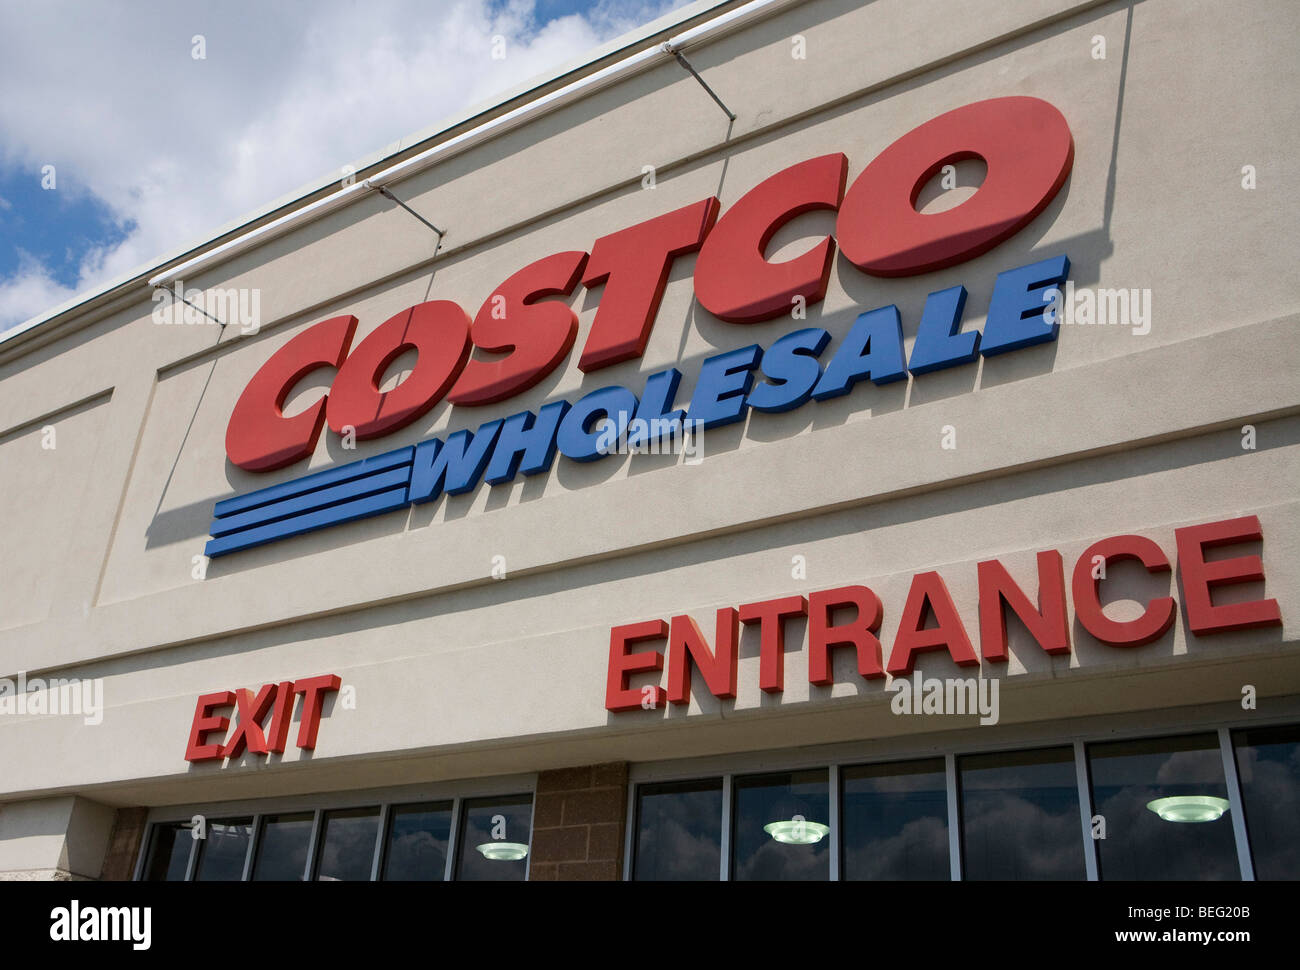 Un emplacement de vente au détail en vrac de Costco, dans le Maryland. Banque D'Images